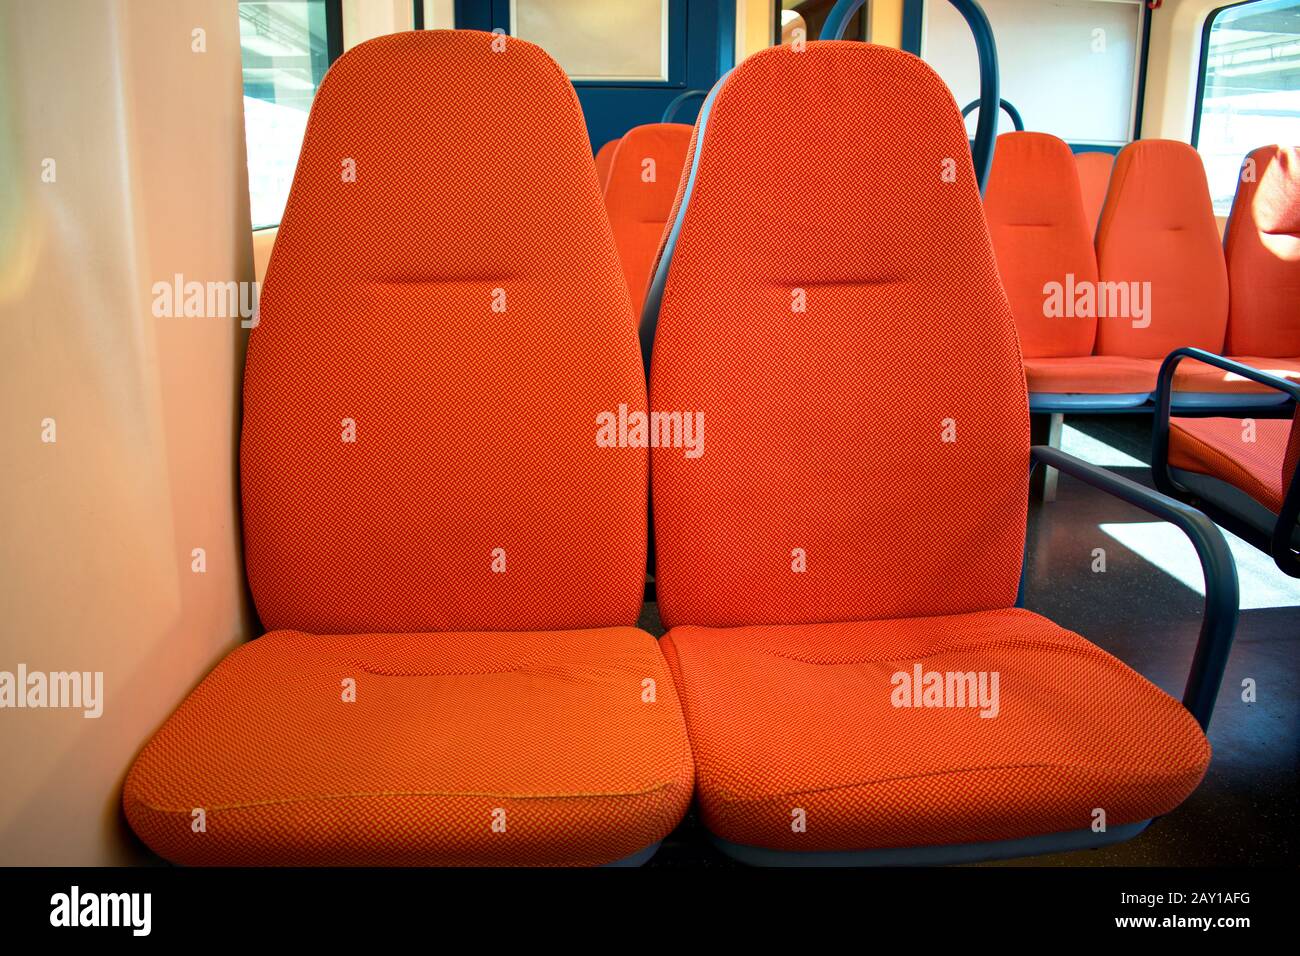 Cabina treno arancione con sedili arancioni Foto Stock